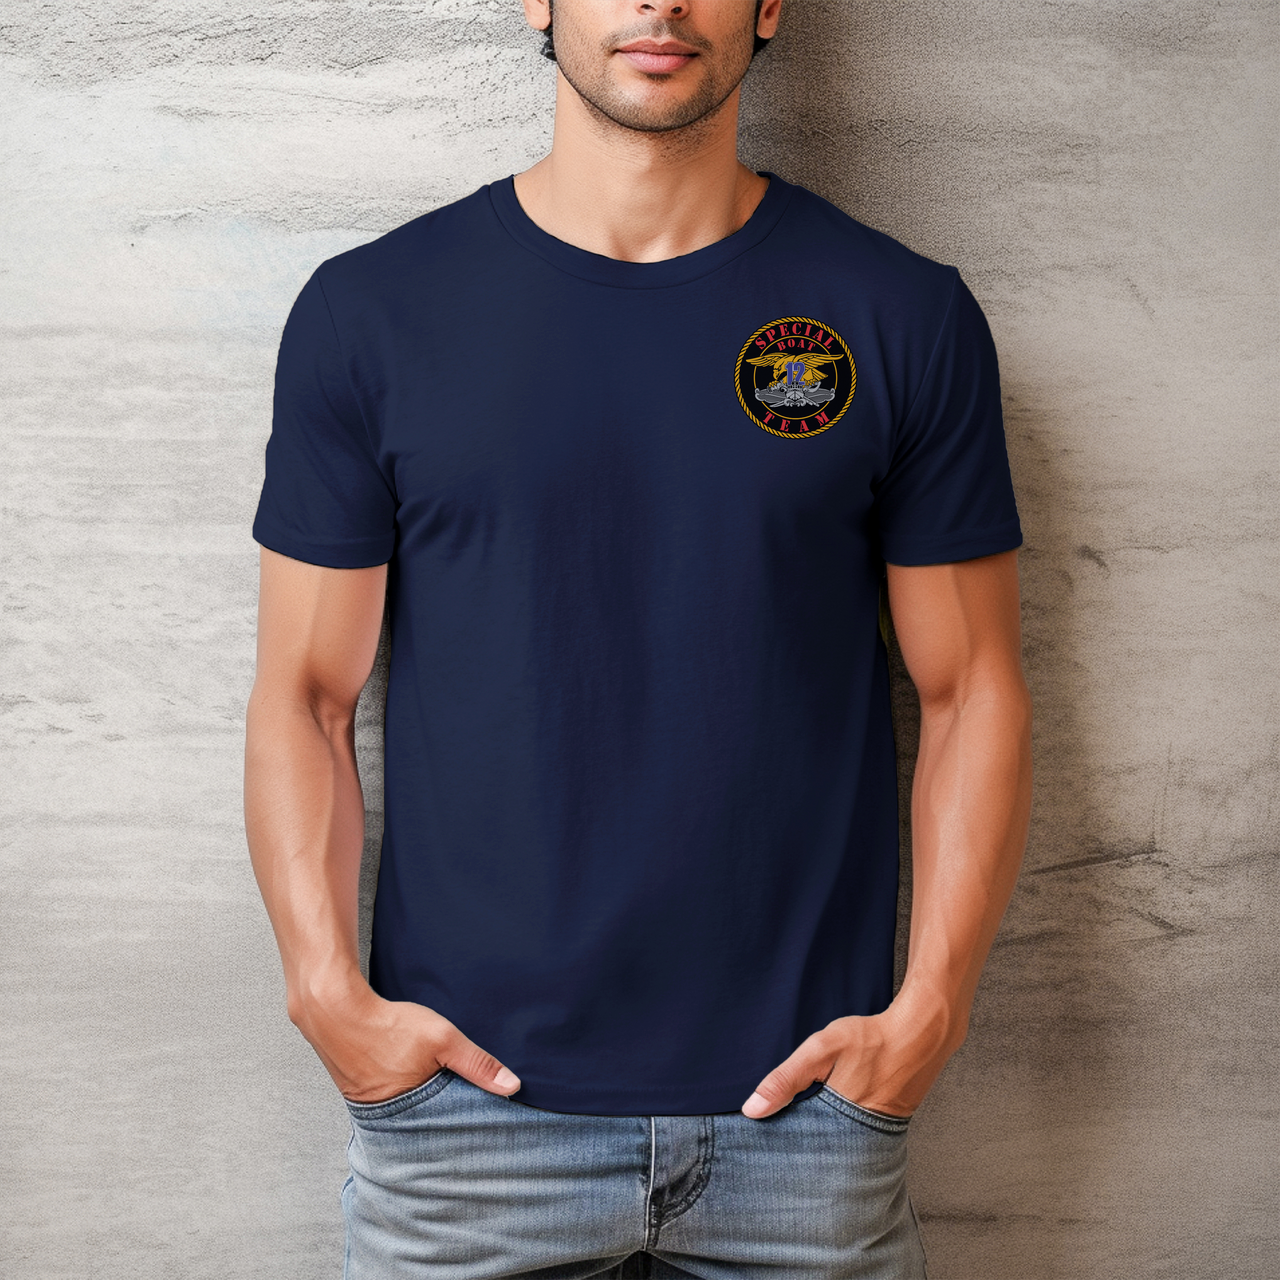 Special Boat Team 12 v1 - SBT 12 T-Shirt (Color)